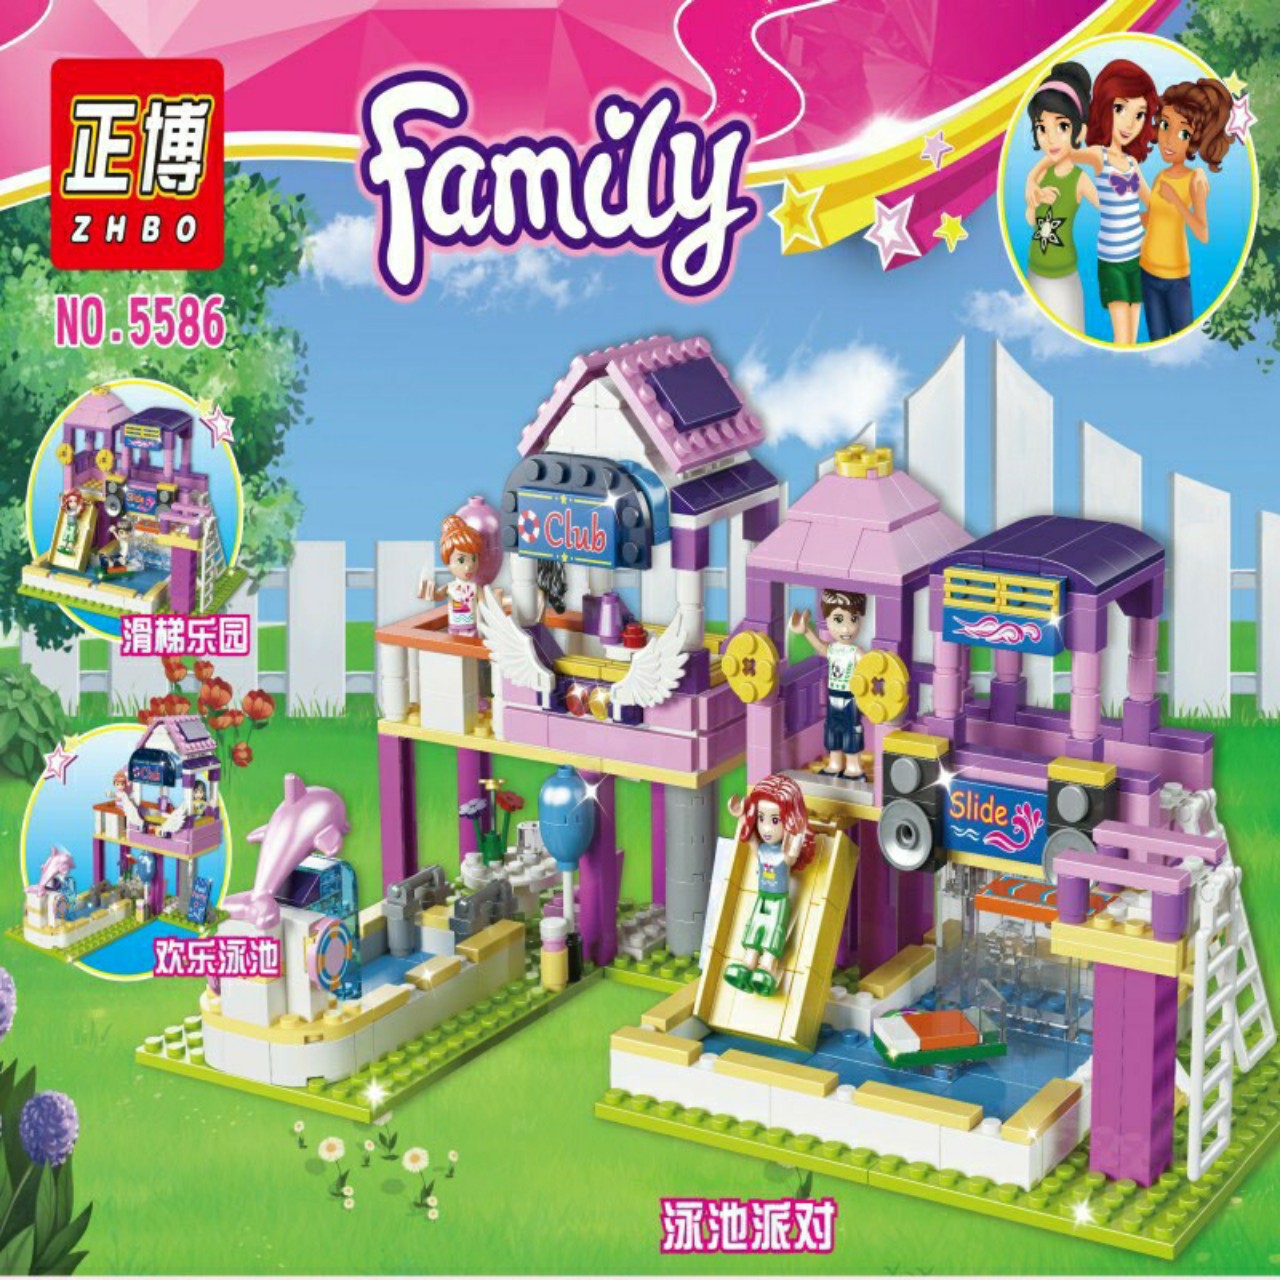 Bộ Lego Xếp Hình FAMILY ngôi nhà công chúa 484 Chi Tiết cho Bé Gái. Mã số